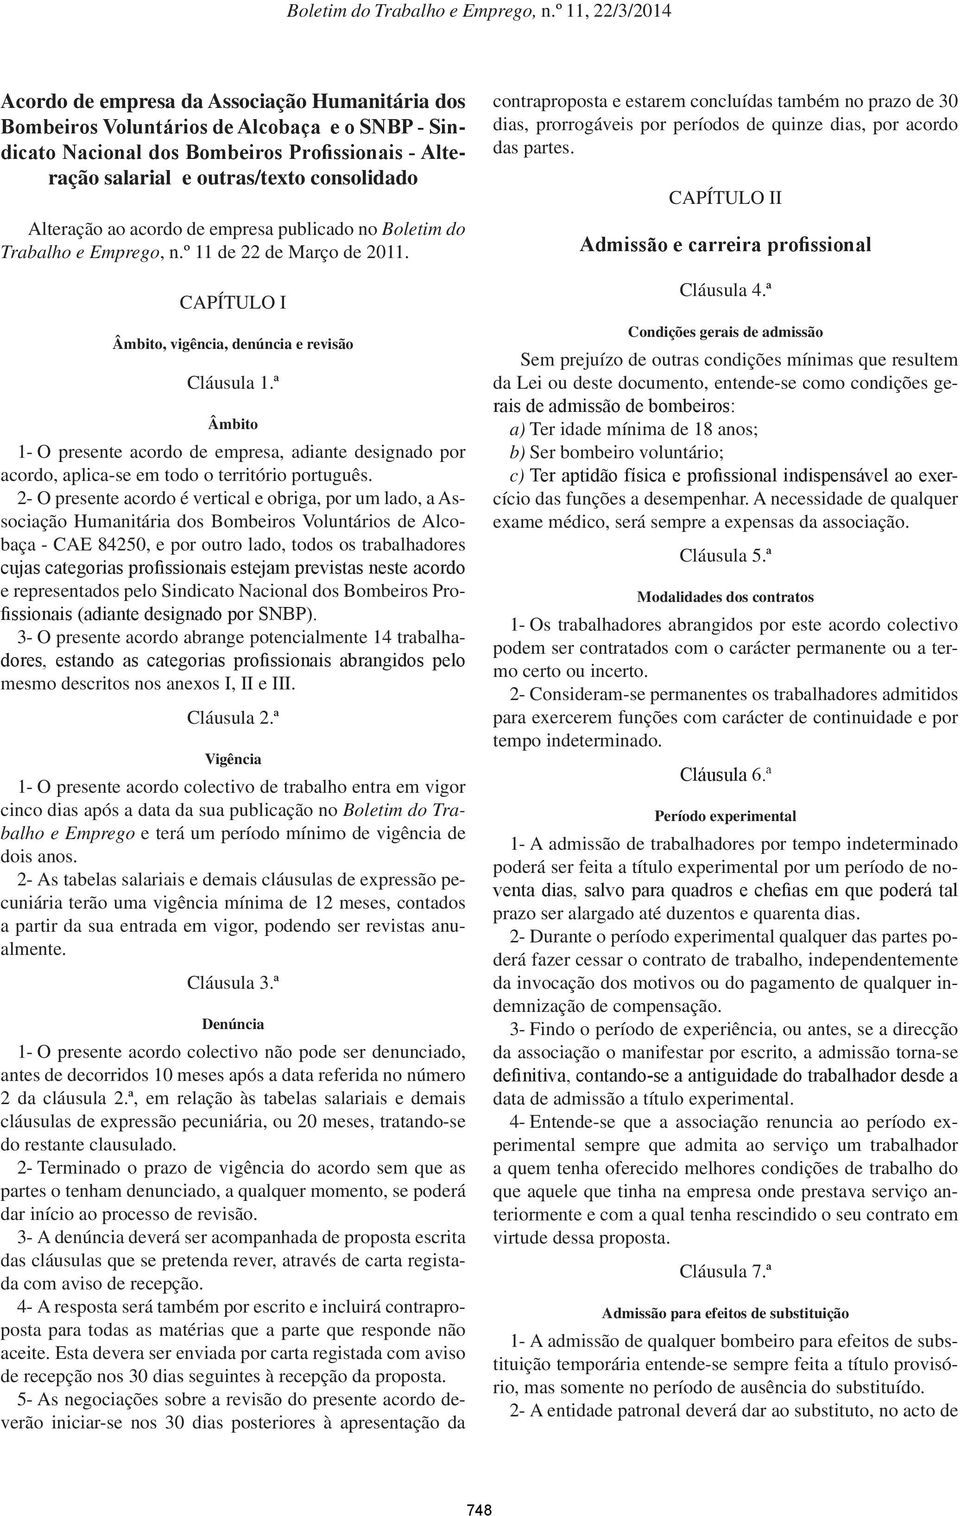 ª Âmbito 1- O presente acordo de empresa, adiante designado por acordo, aplica-se em todo o território português.